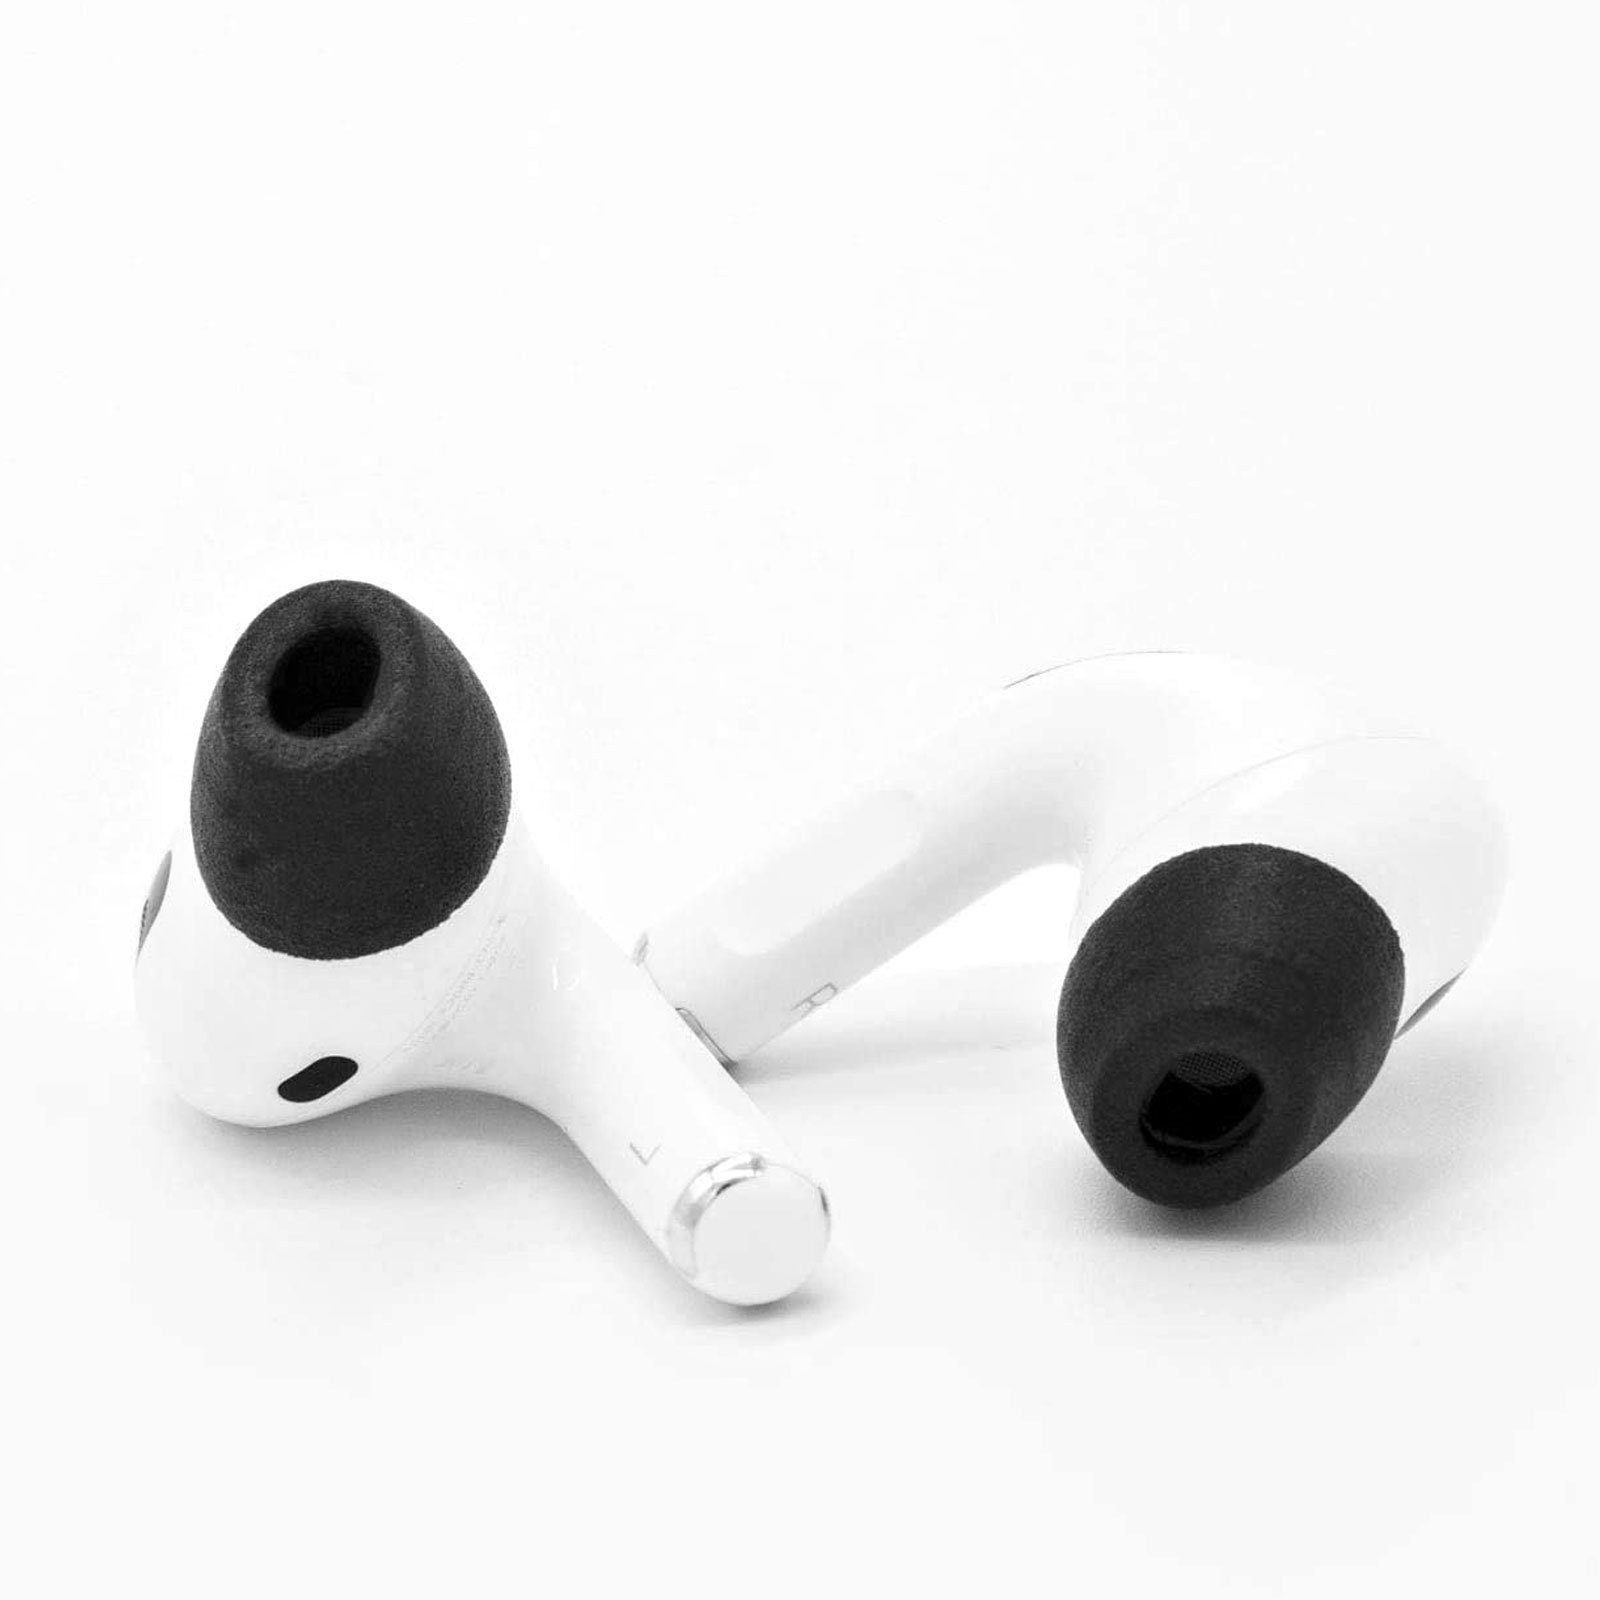 + (Sicherer Comply Ohrstöpsel Mikrofasertuch zutreffend) Tragekomfort, zutreffend, Größe nicht Pro In-Ear-Kopfhörer für gemischt nicht Sitz, 2.0 AirPods Comply Hoher